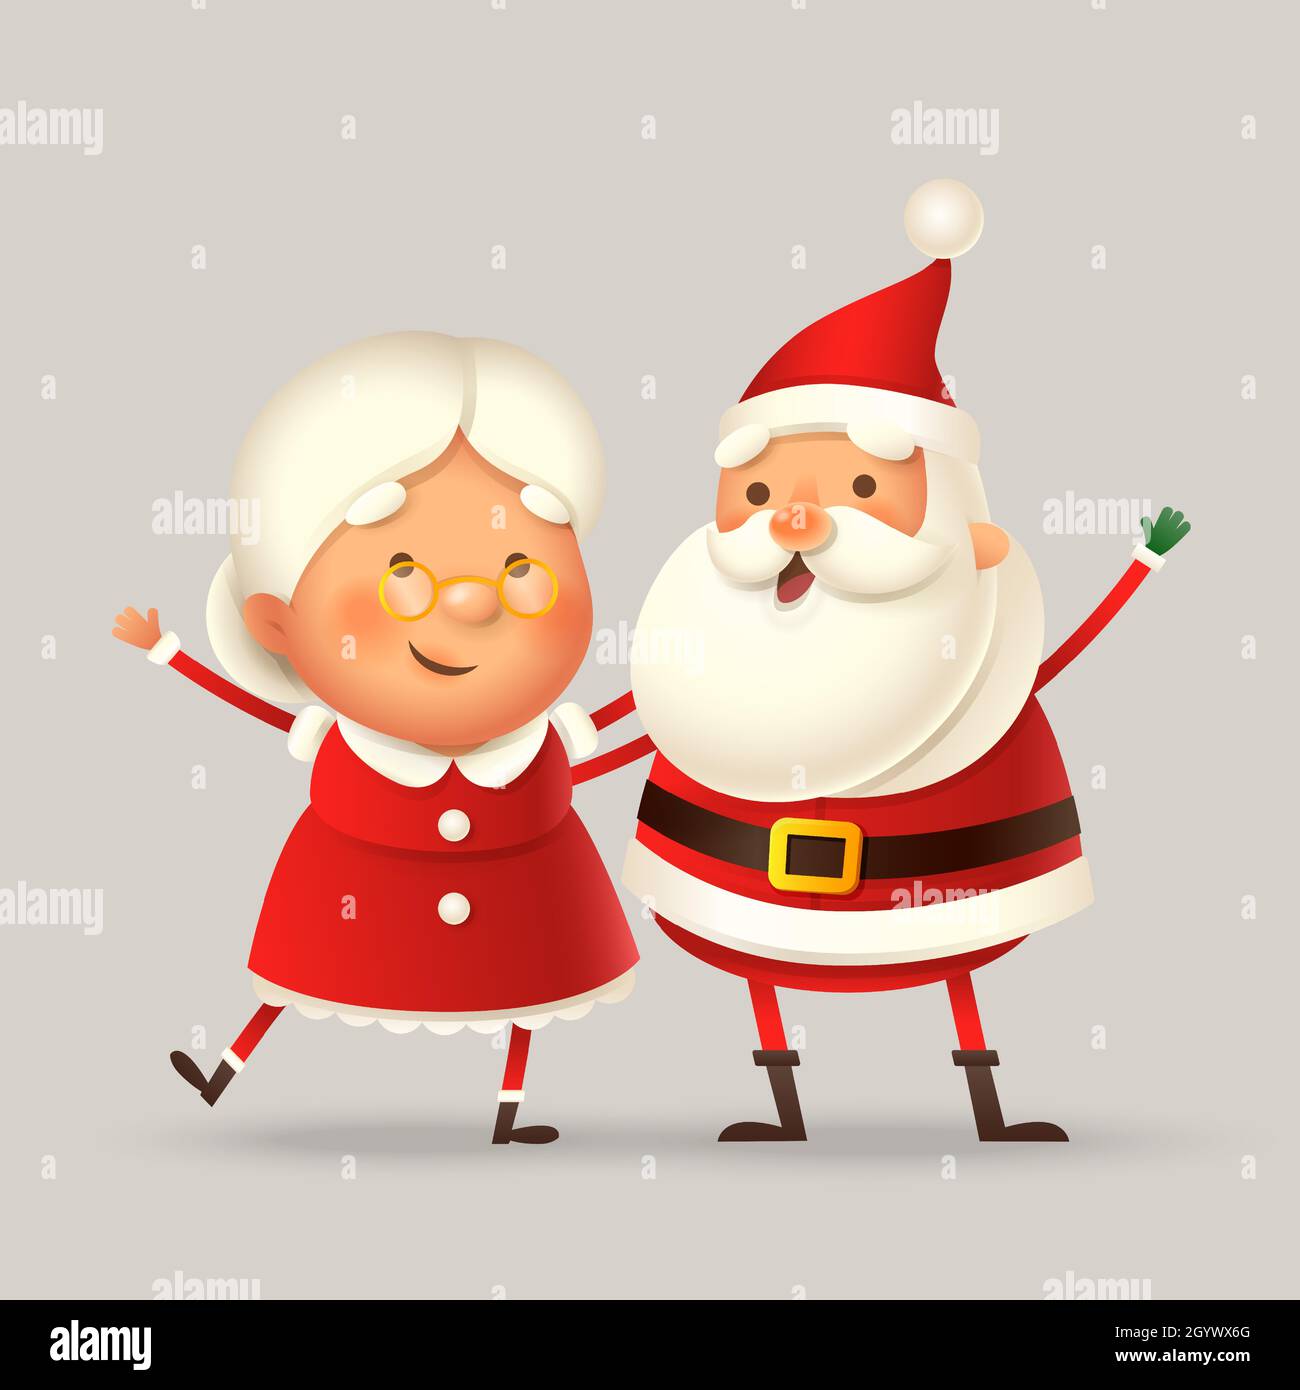 Mme Claus et le Père Noël célèbrent les fêtes de Noël - illustration vectorielle mignonne et heureuse isolée Illustration de Vecteur